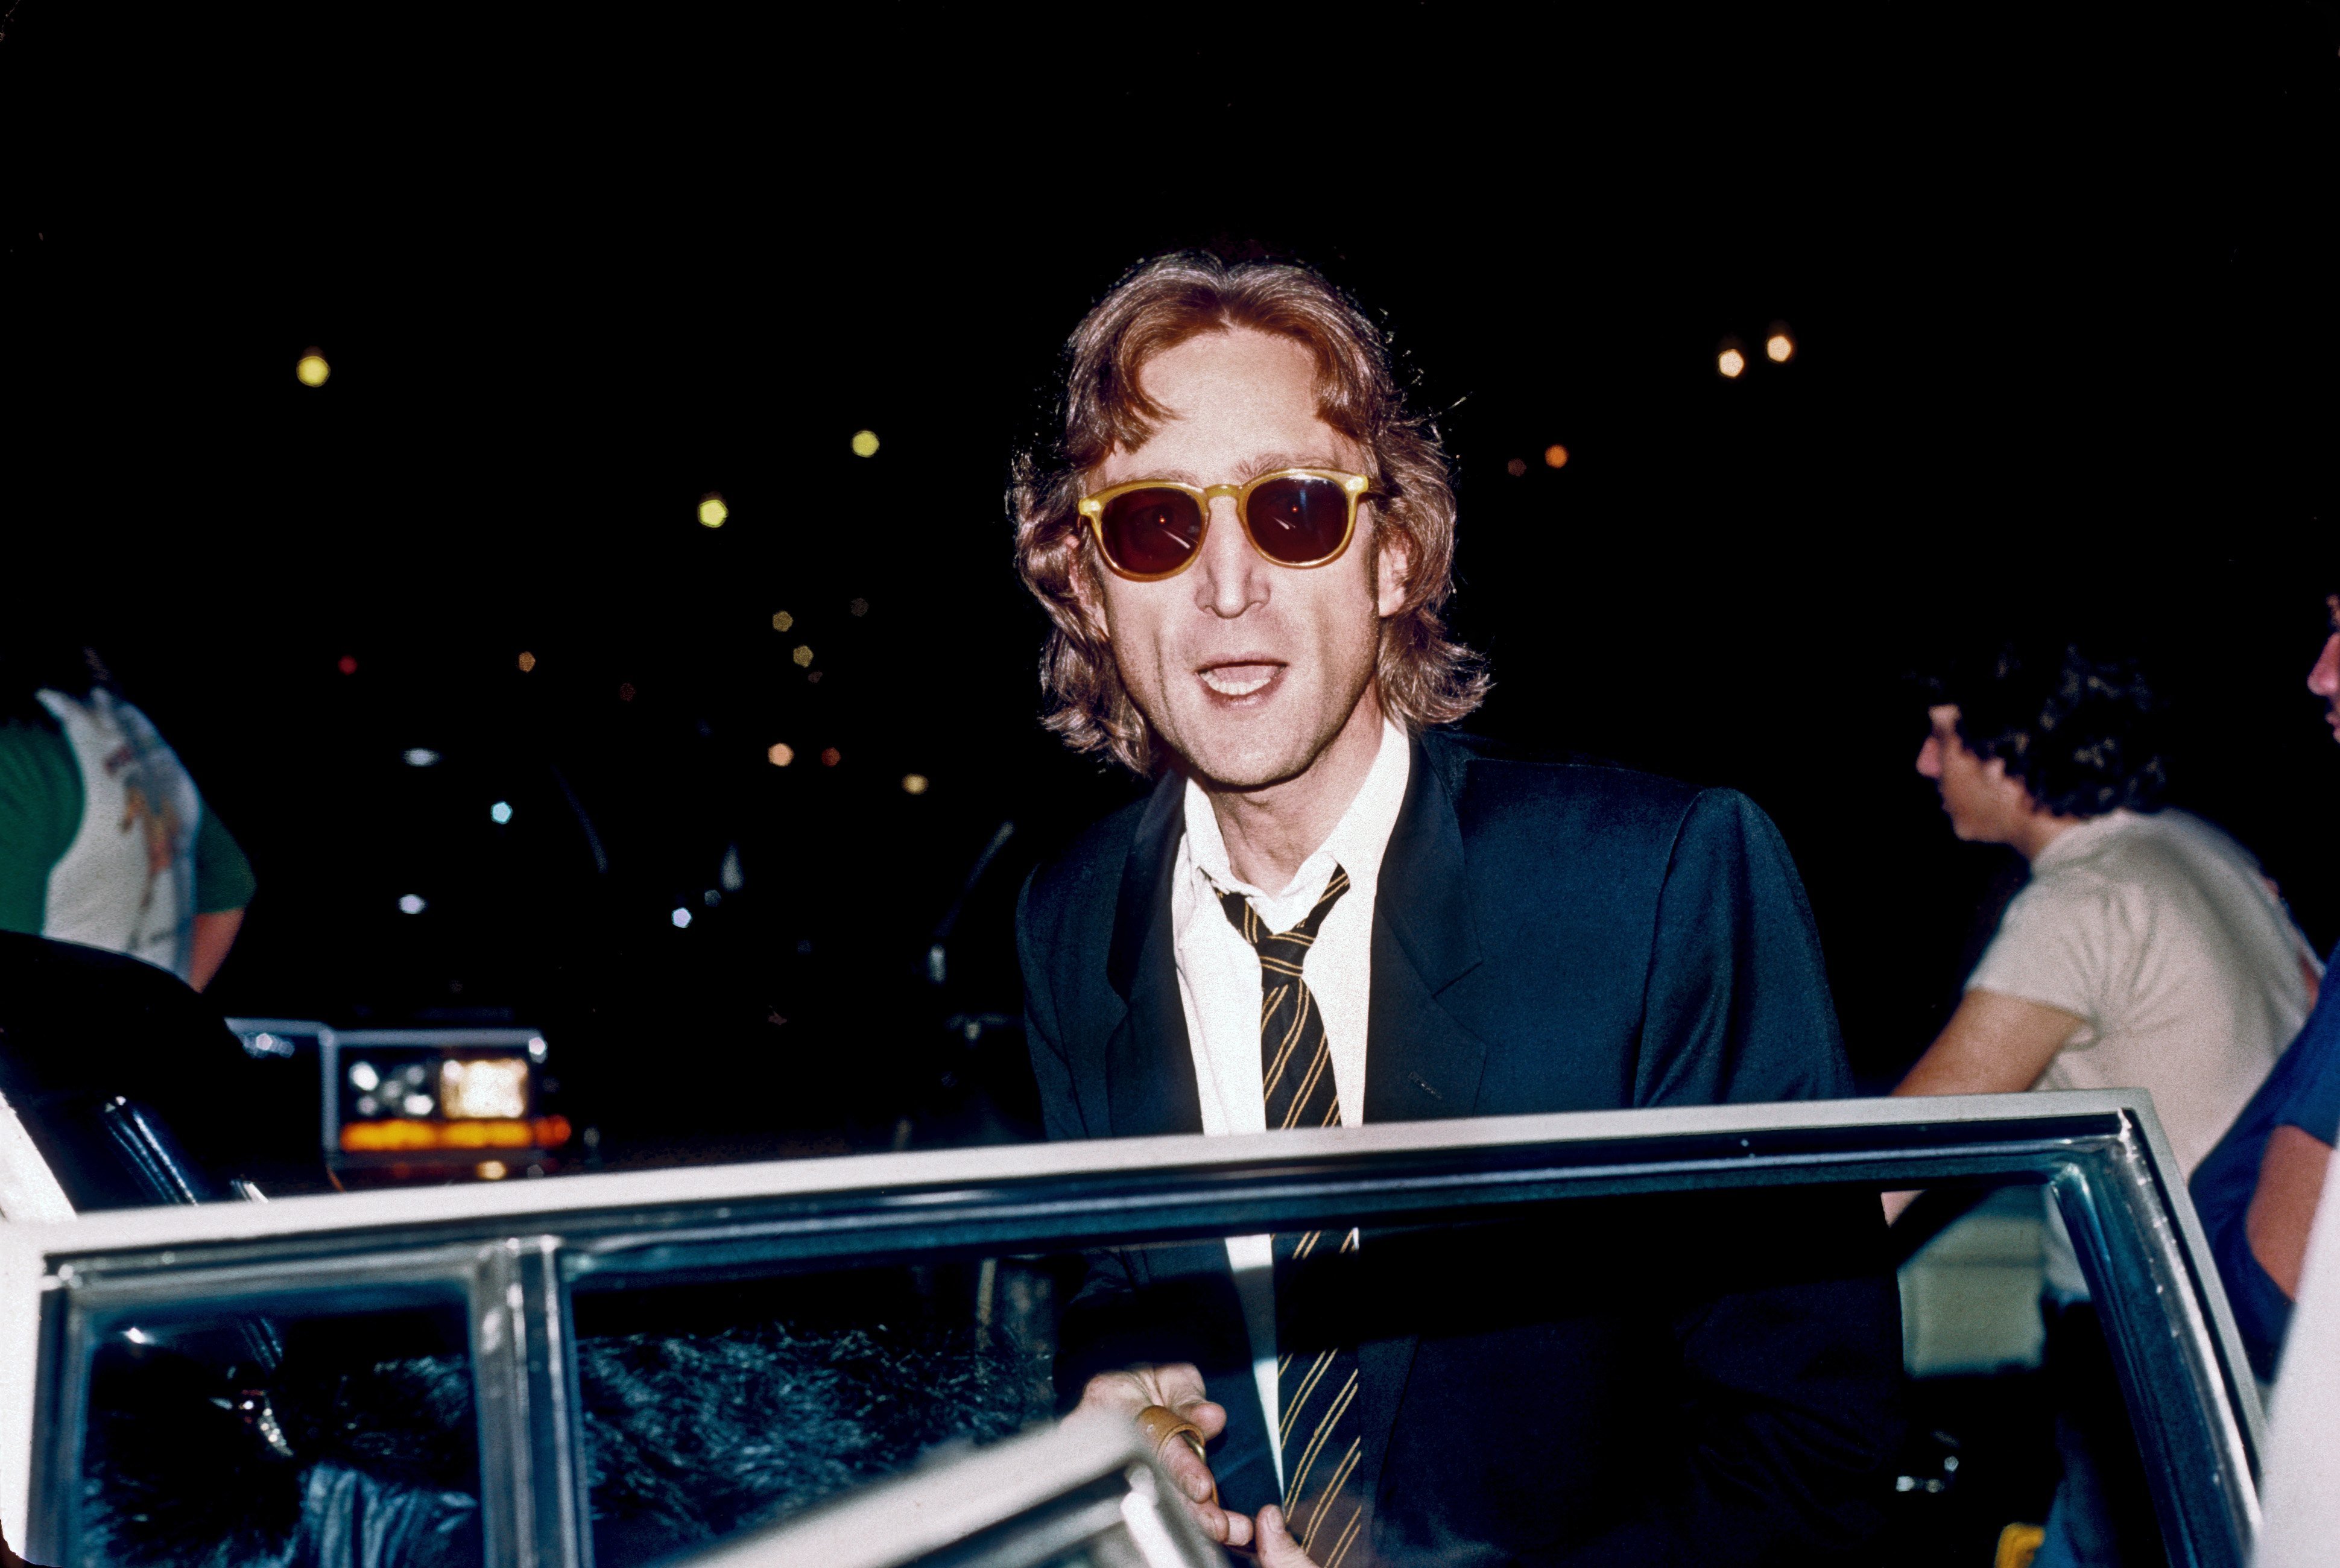 John Lennon in August 1980